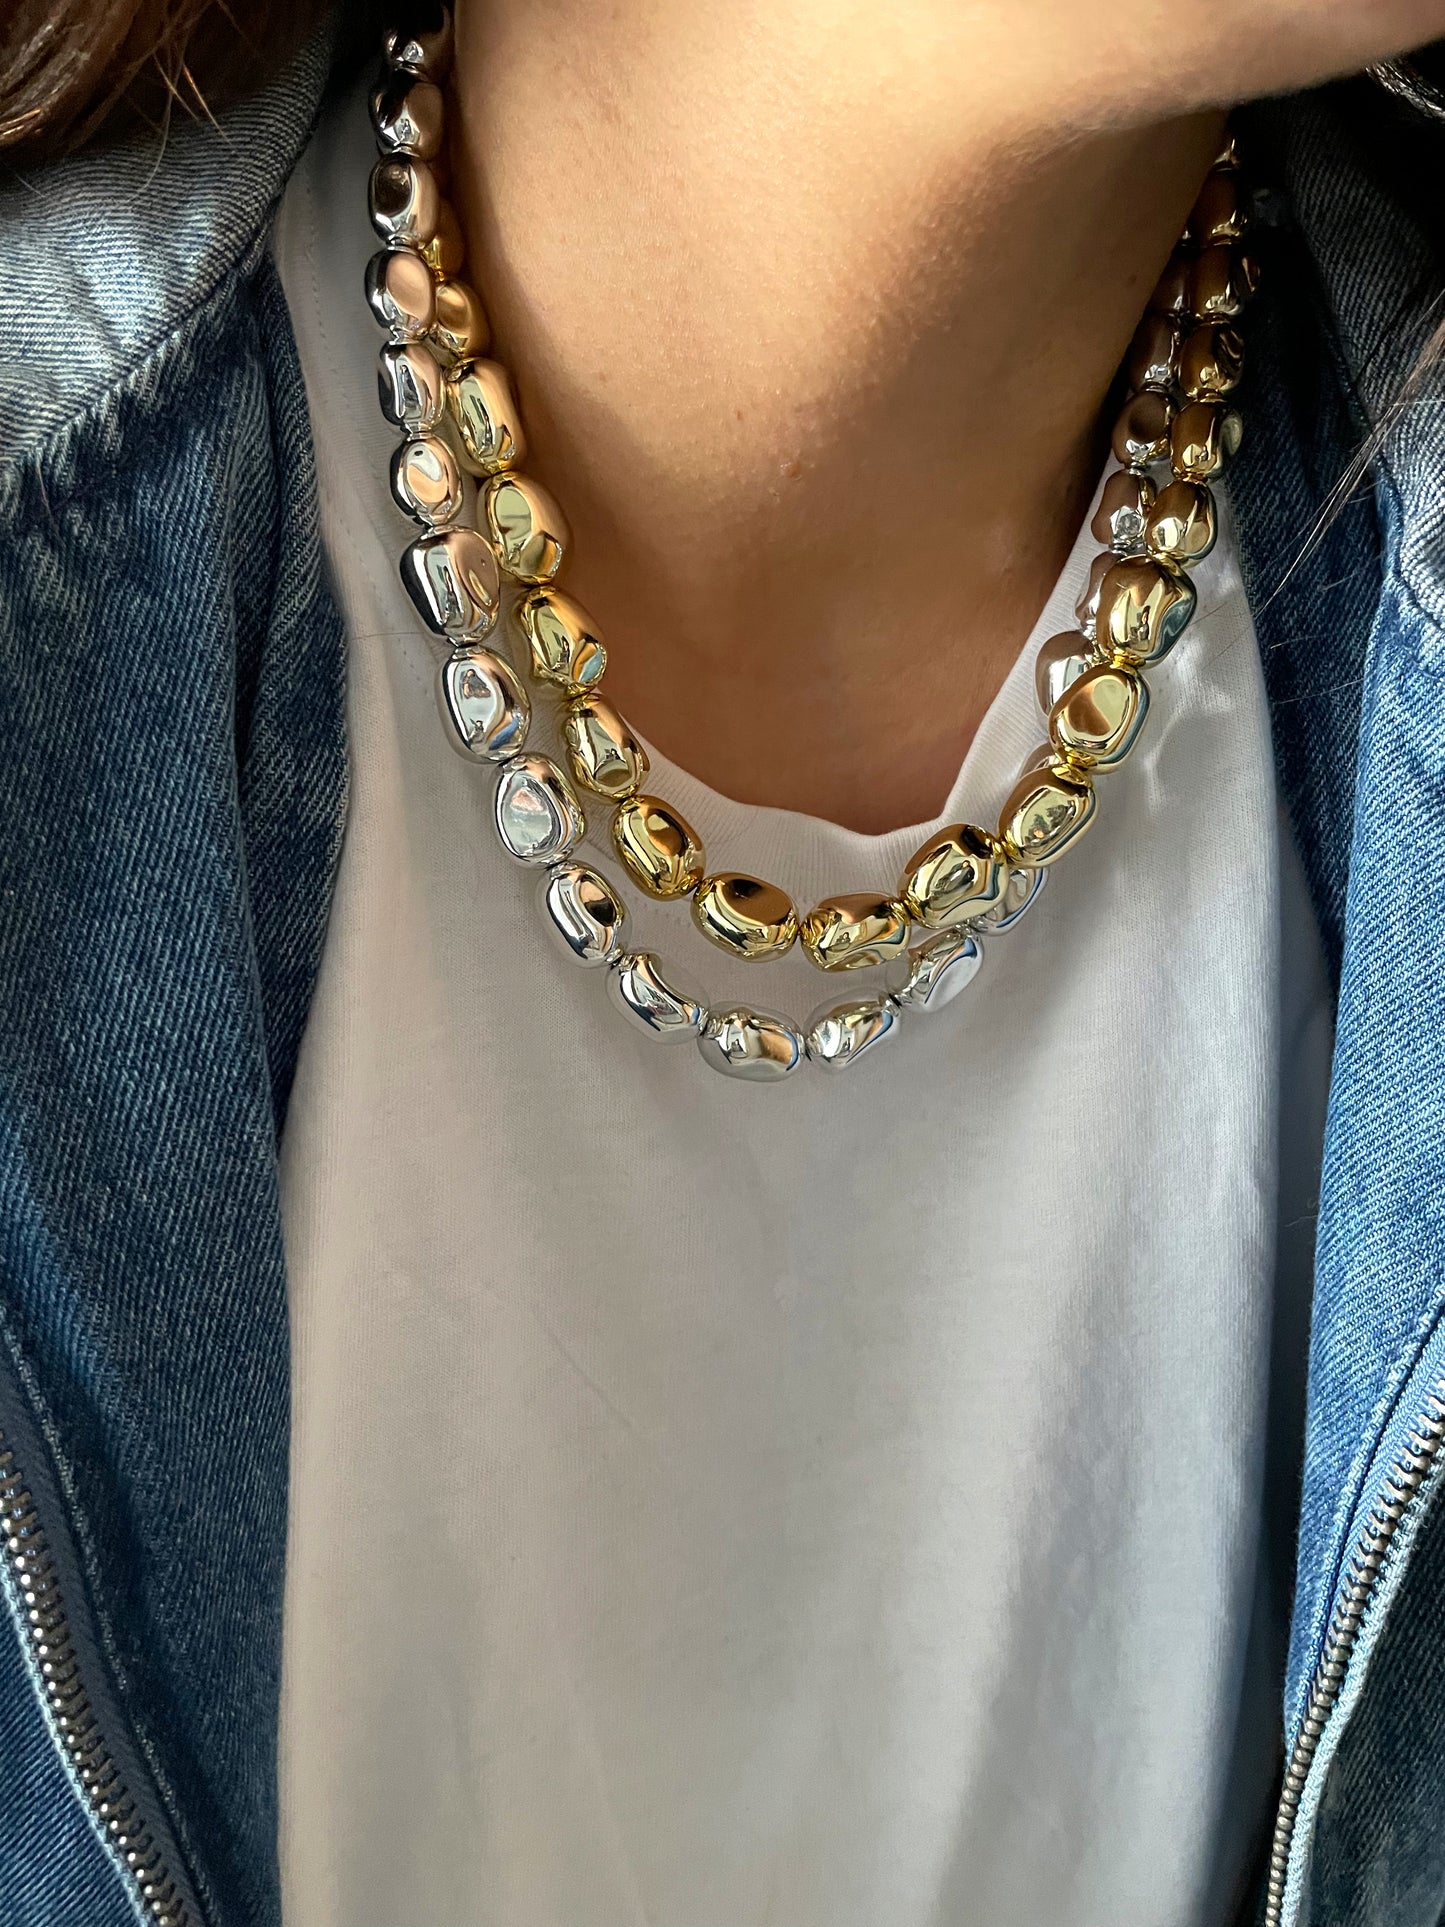 Bella necklace